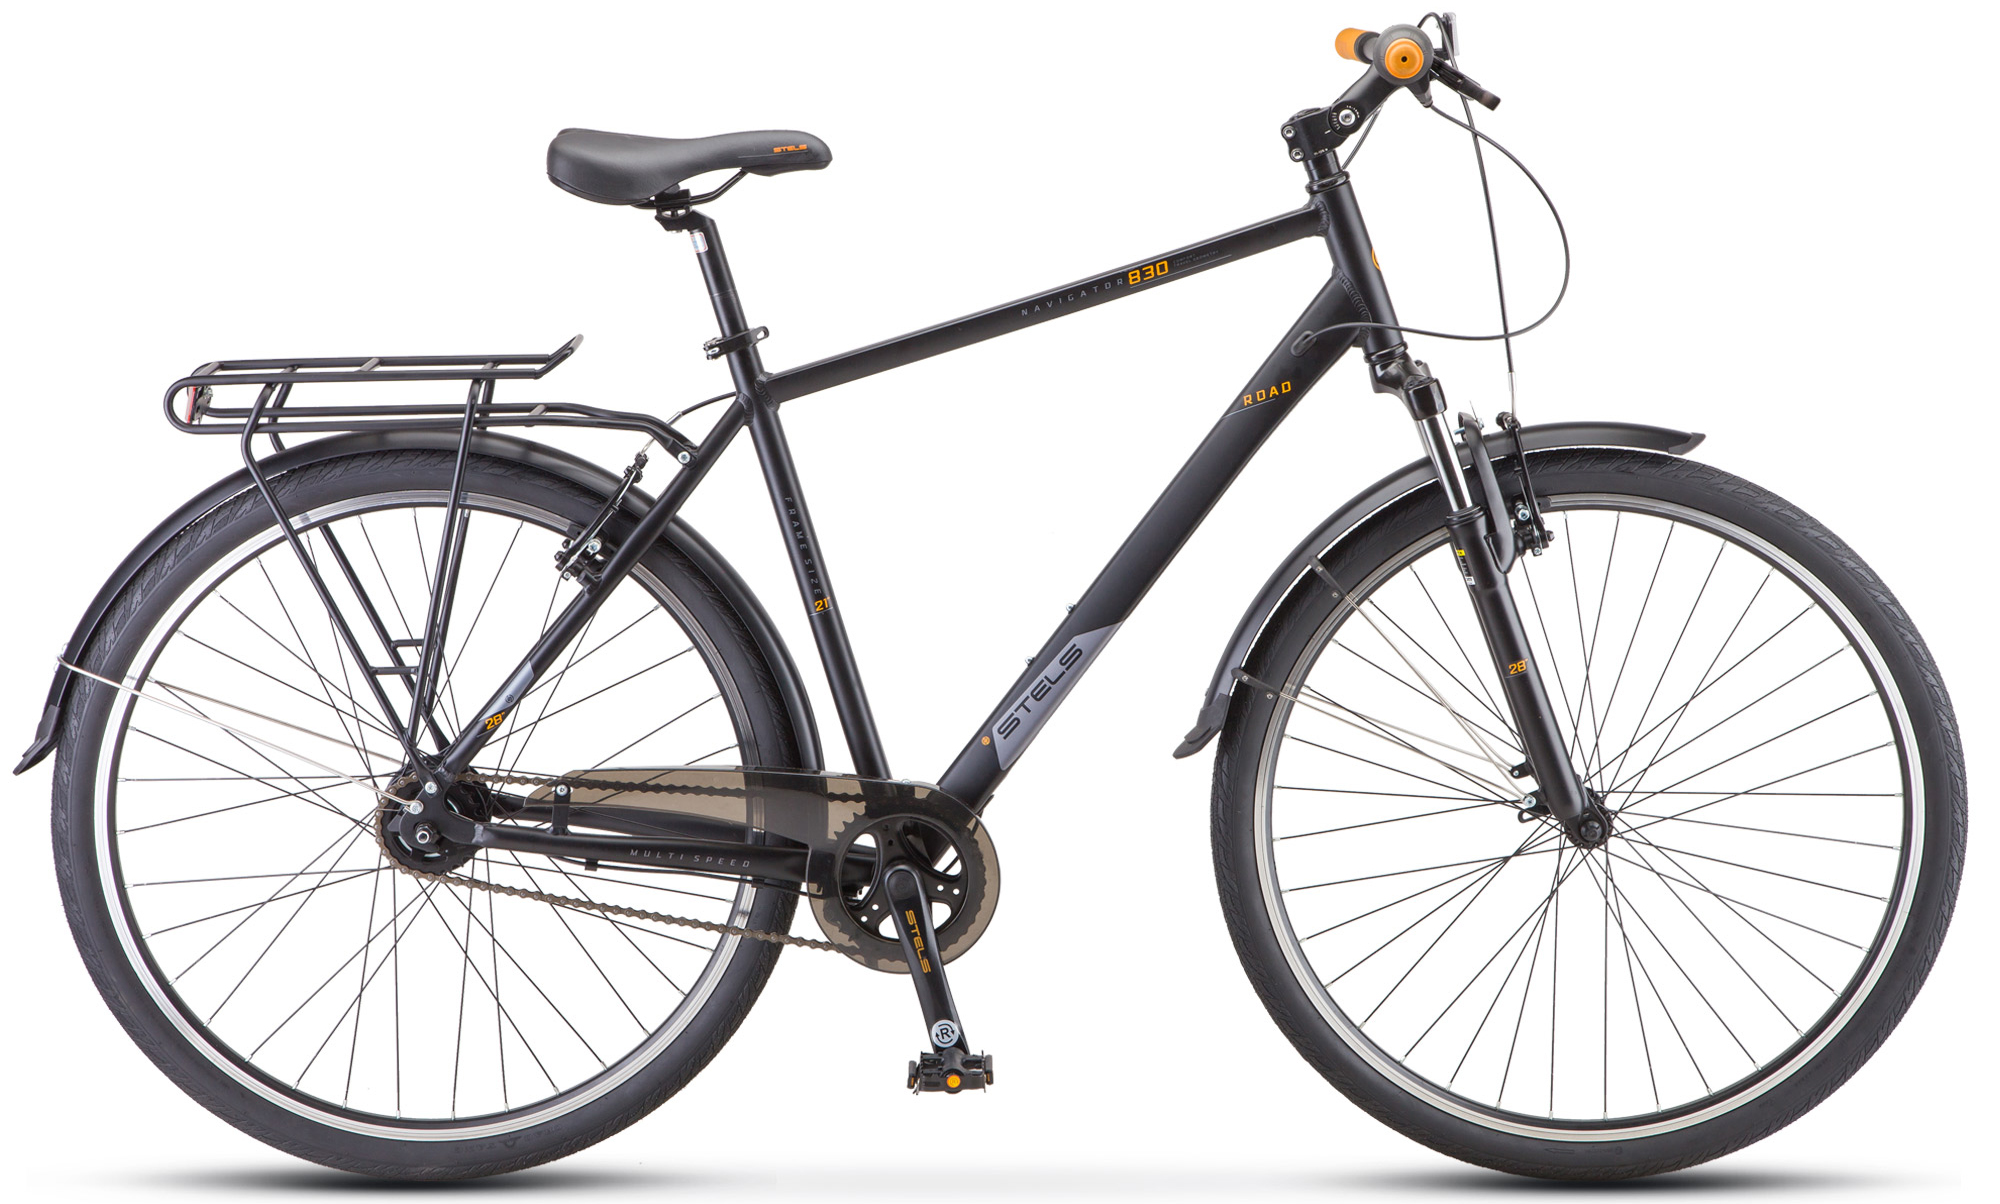  Отзывы о Городском велосипеде Stels Navigator 830 Gent V010 (2021) 2021